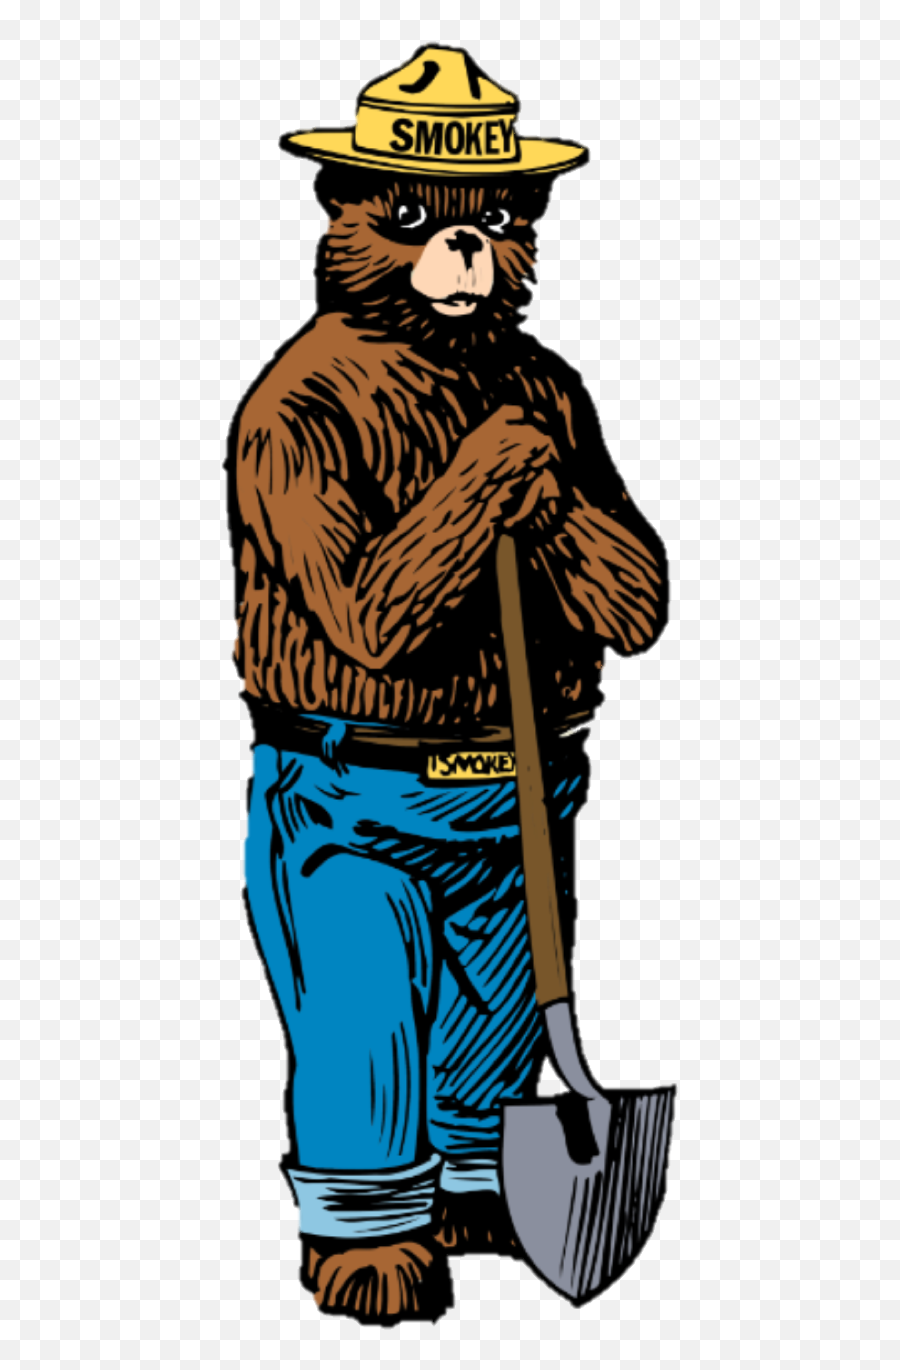 Smokey Bear - National Association Of State Foresters Smokey Bear Png,Smokey Png